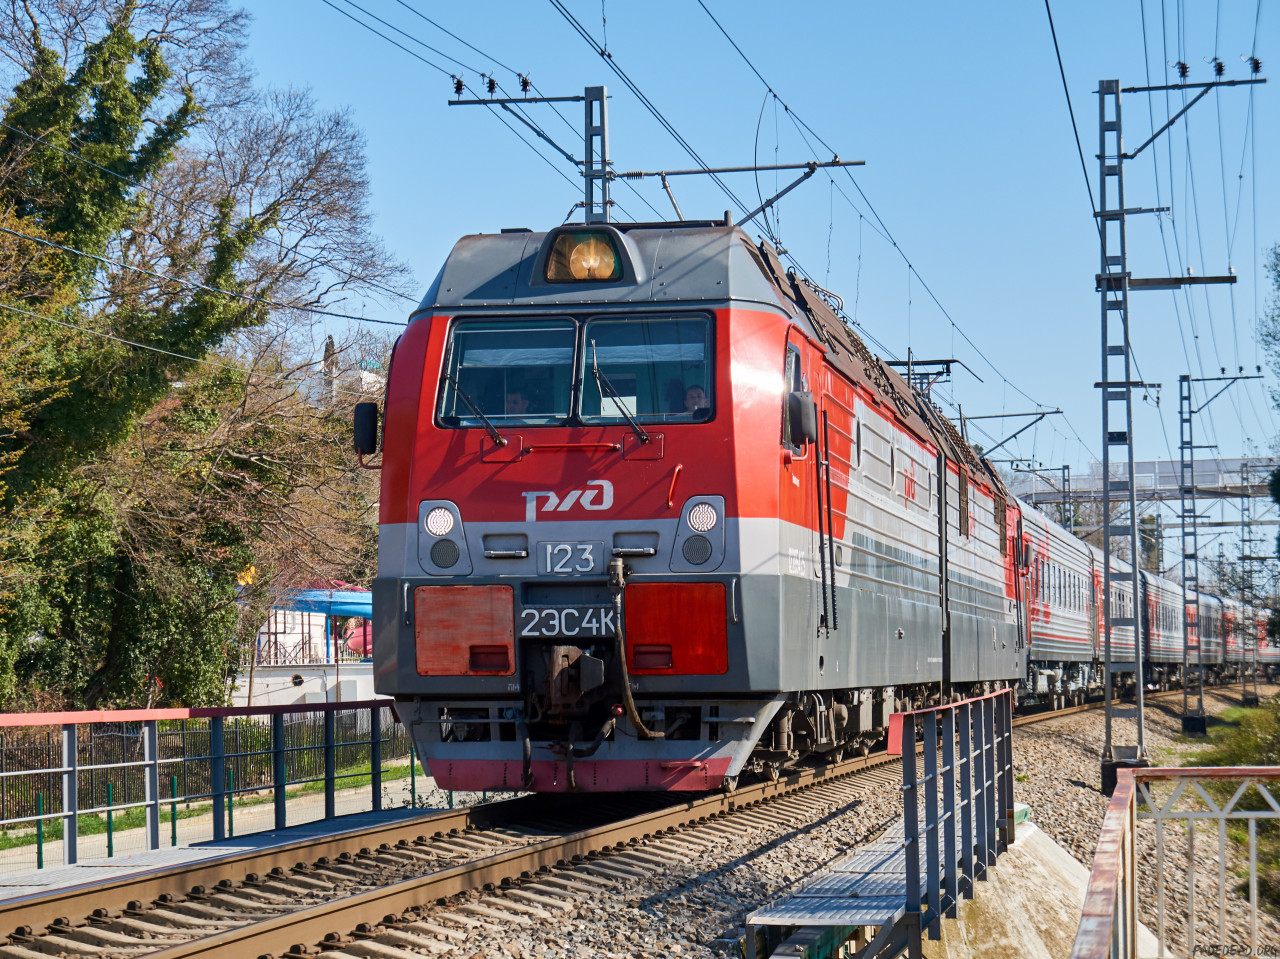 Thumbnail for «2ЭС4К-123 с пассажирским поездом»